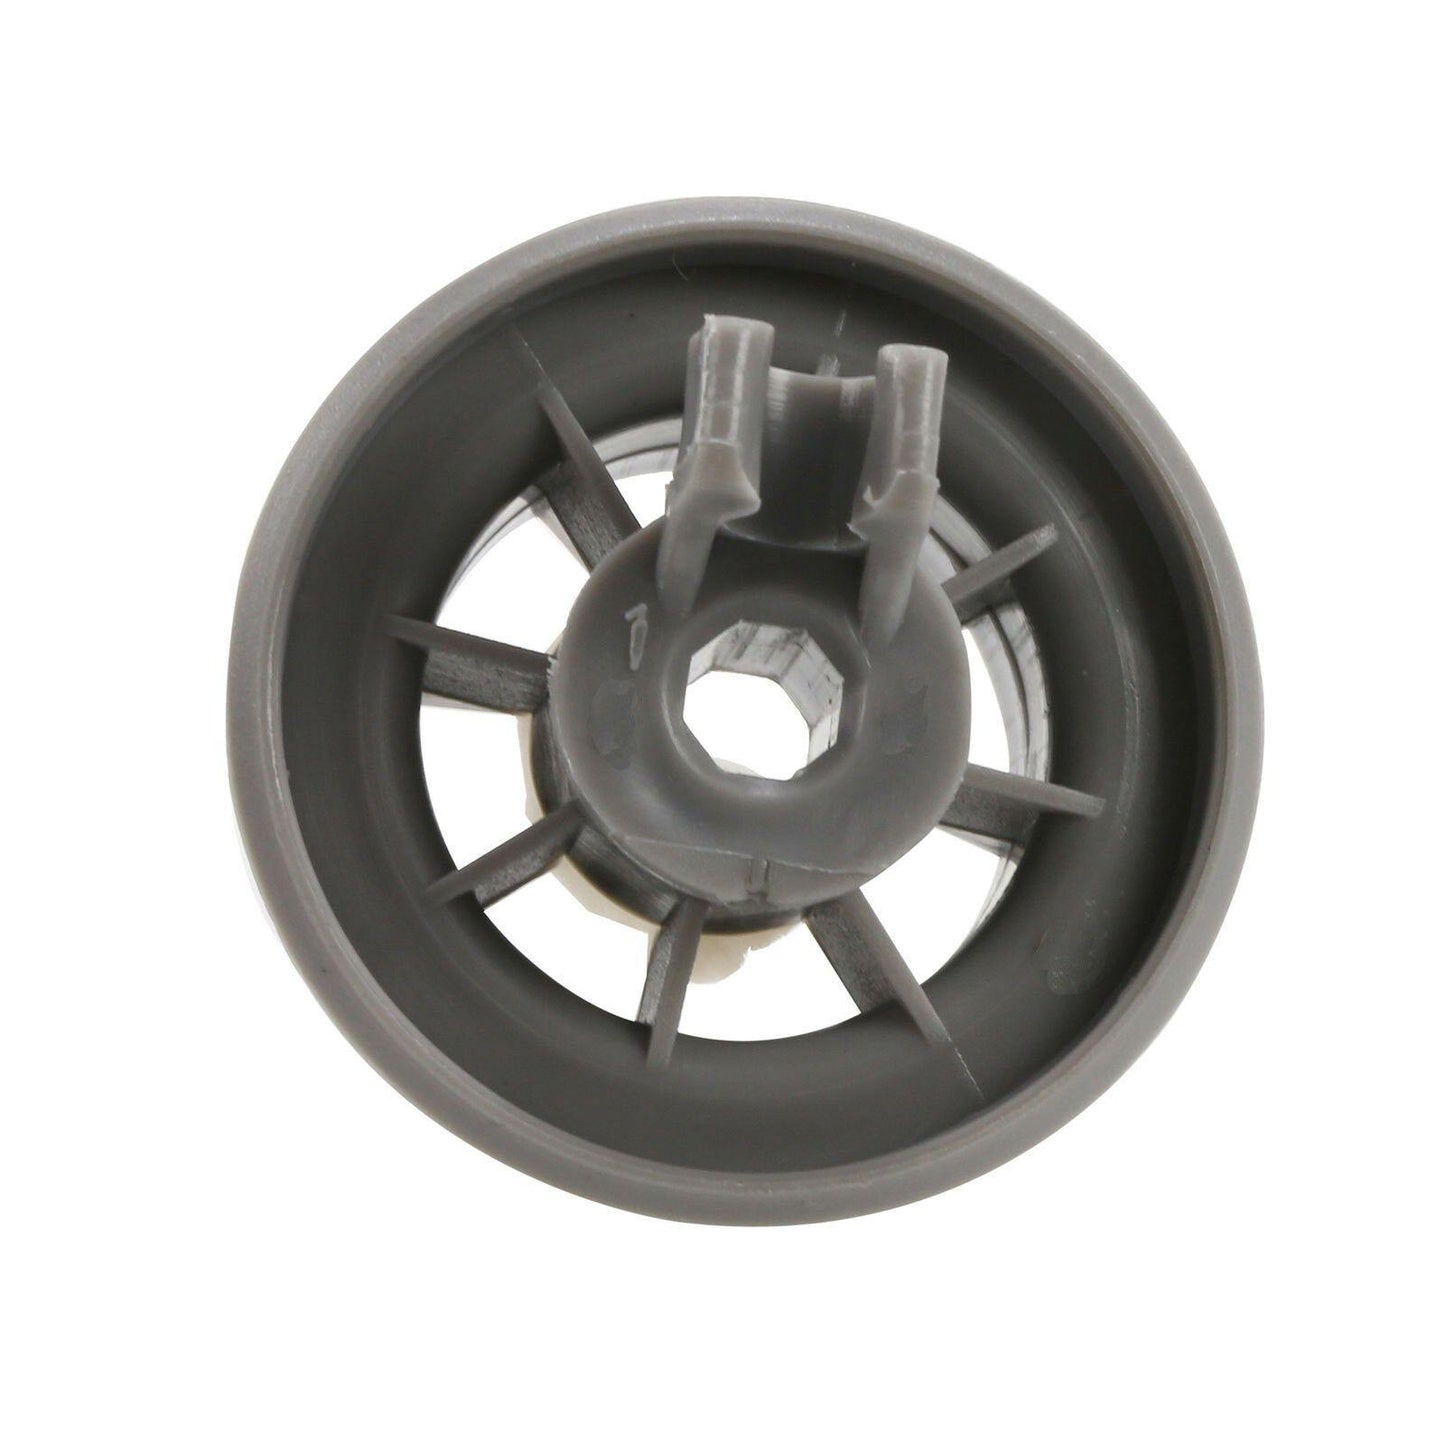 4X Diswasher Lower Bottom Bakset Wheel 165314 For Bosch Neff & Siemens Rollers Sparesbarn